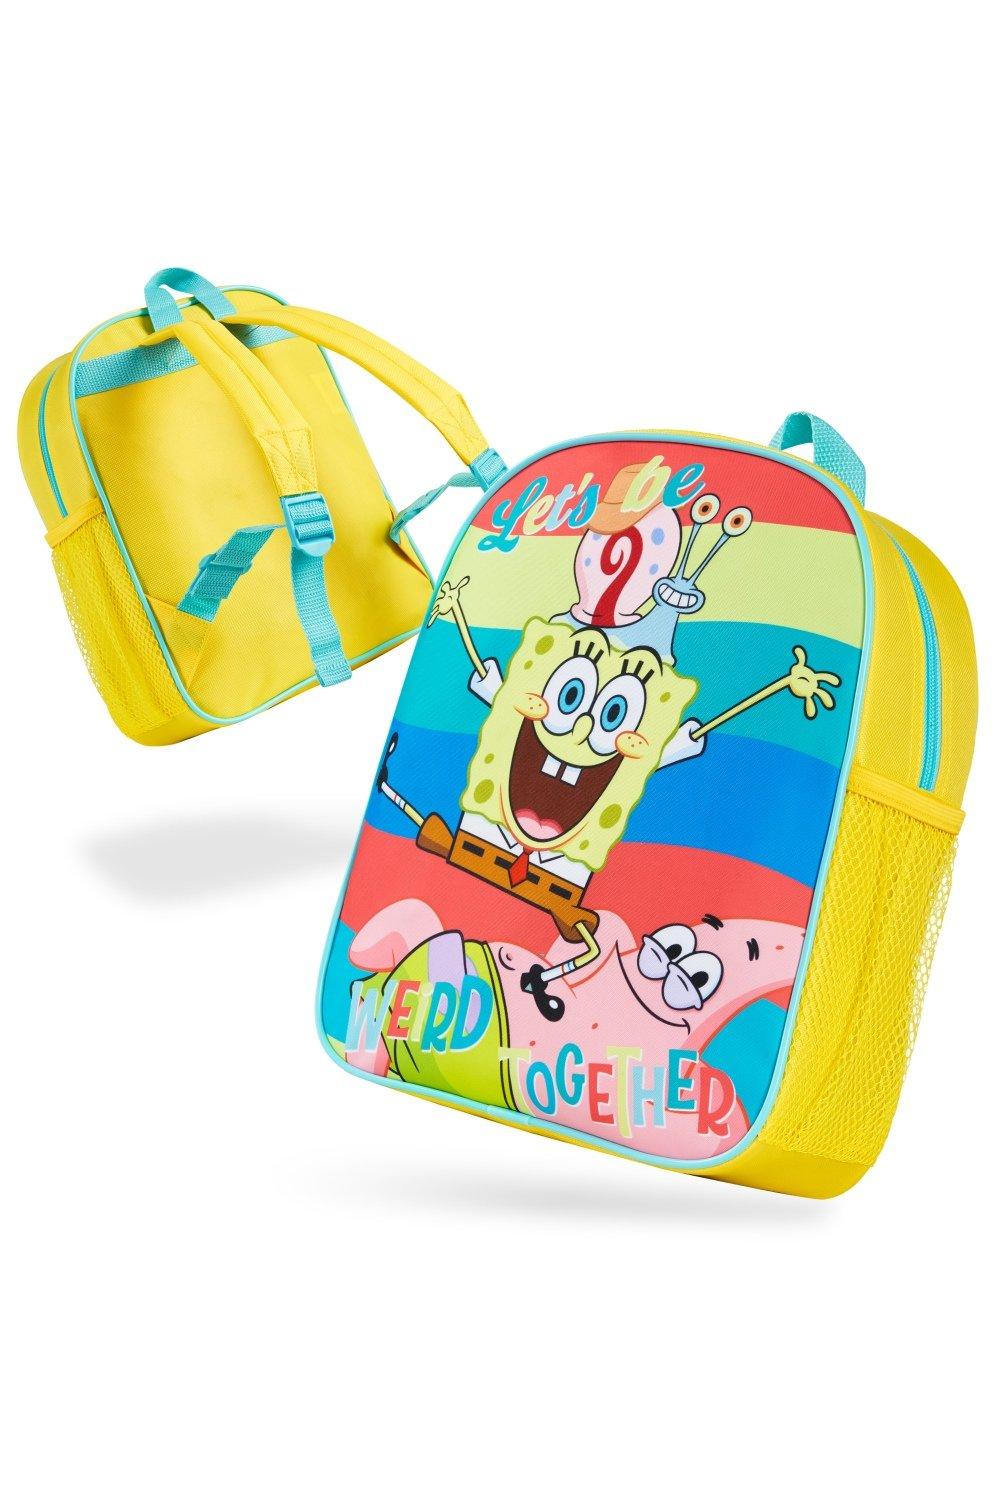 Детский рюкзак «Губка Боб Квадратные Штаны» SpongeBob SquarePants, мультиколор толстовка губка боб spongebob 23